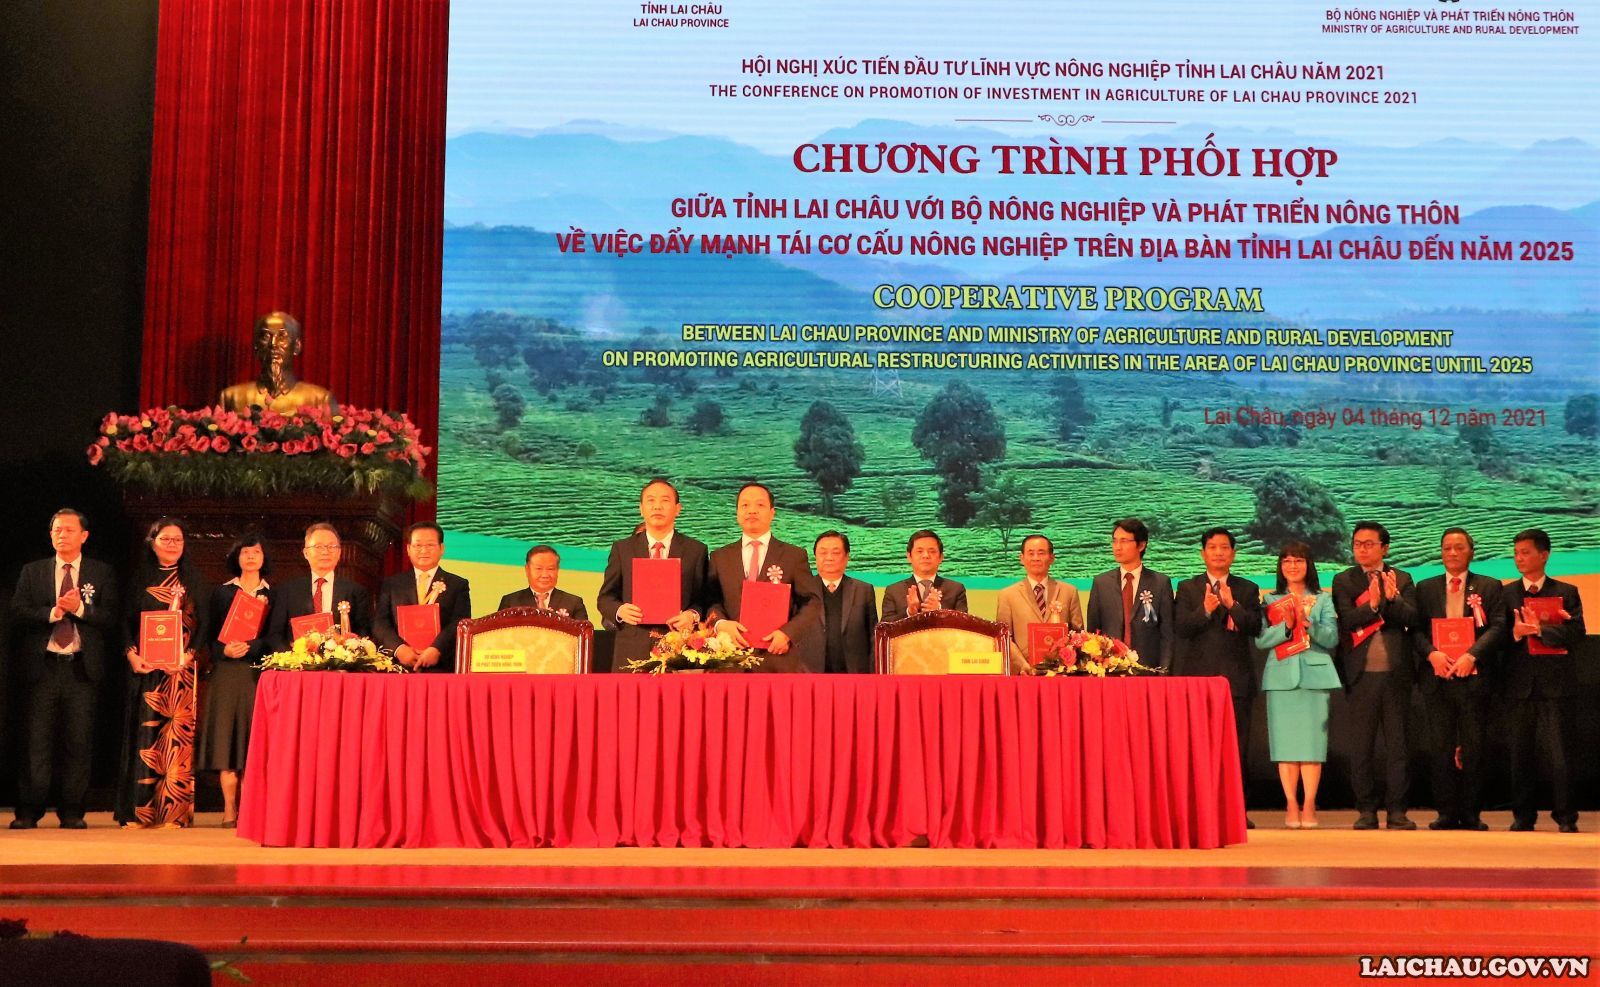 Ký kết chương trình phối hợp công tác giữa UBND tỉnh Lai Châu với Bộ Nông nghiệp và phát triển nông thôn.